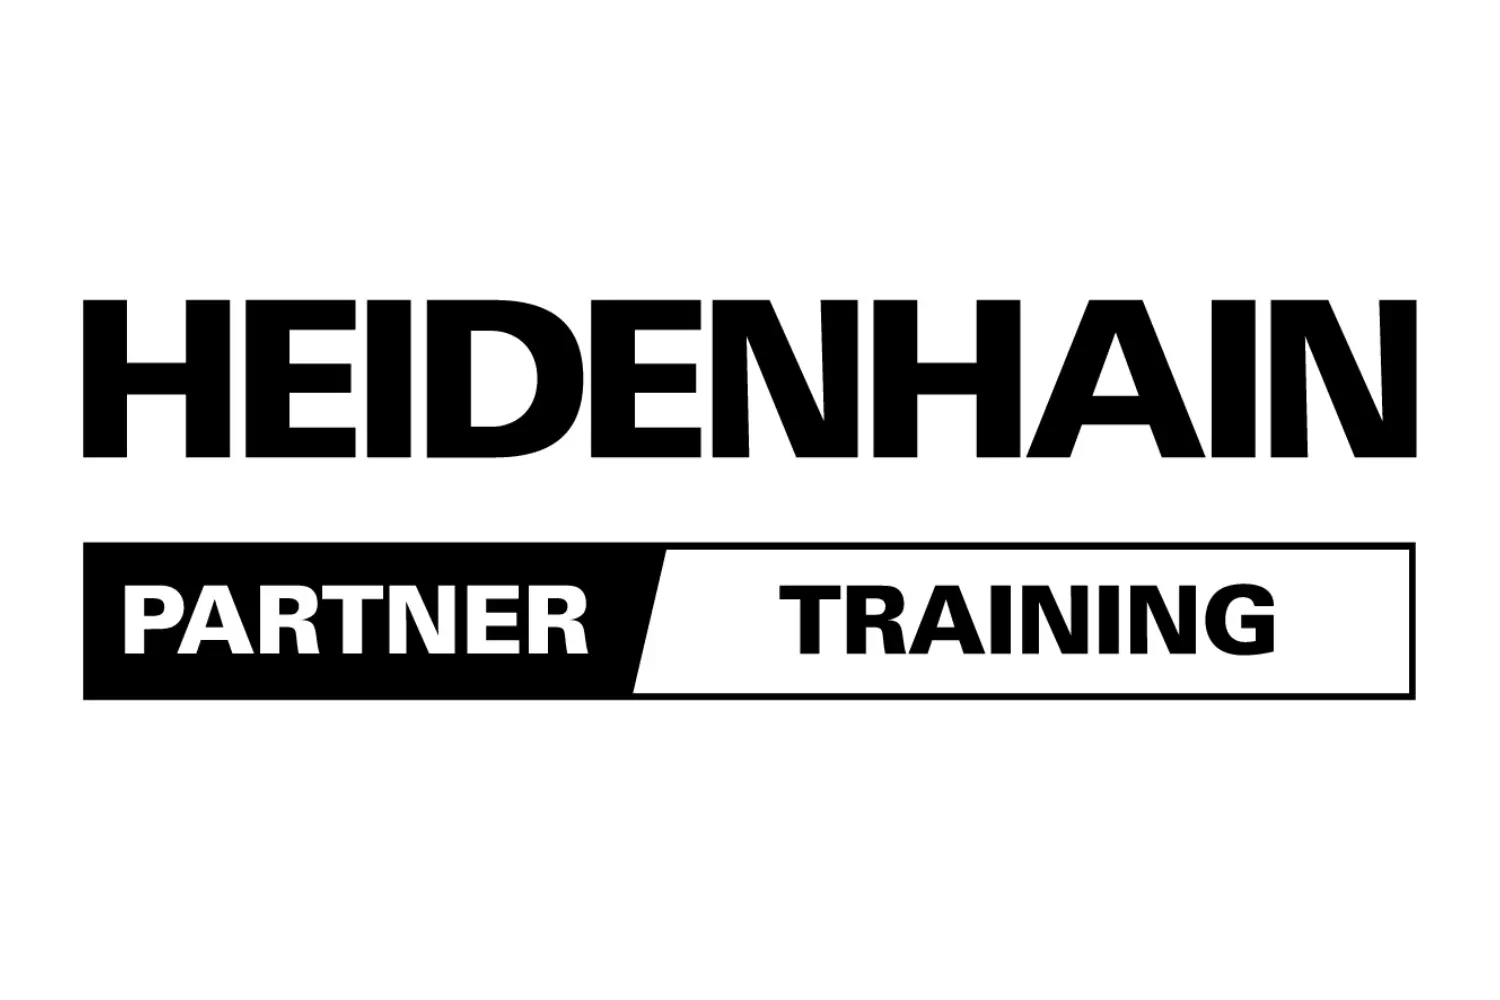 HEIDENHAIN Partner Training sw 002